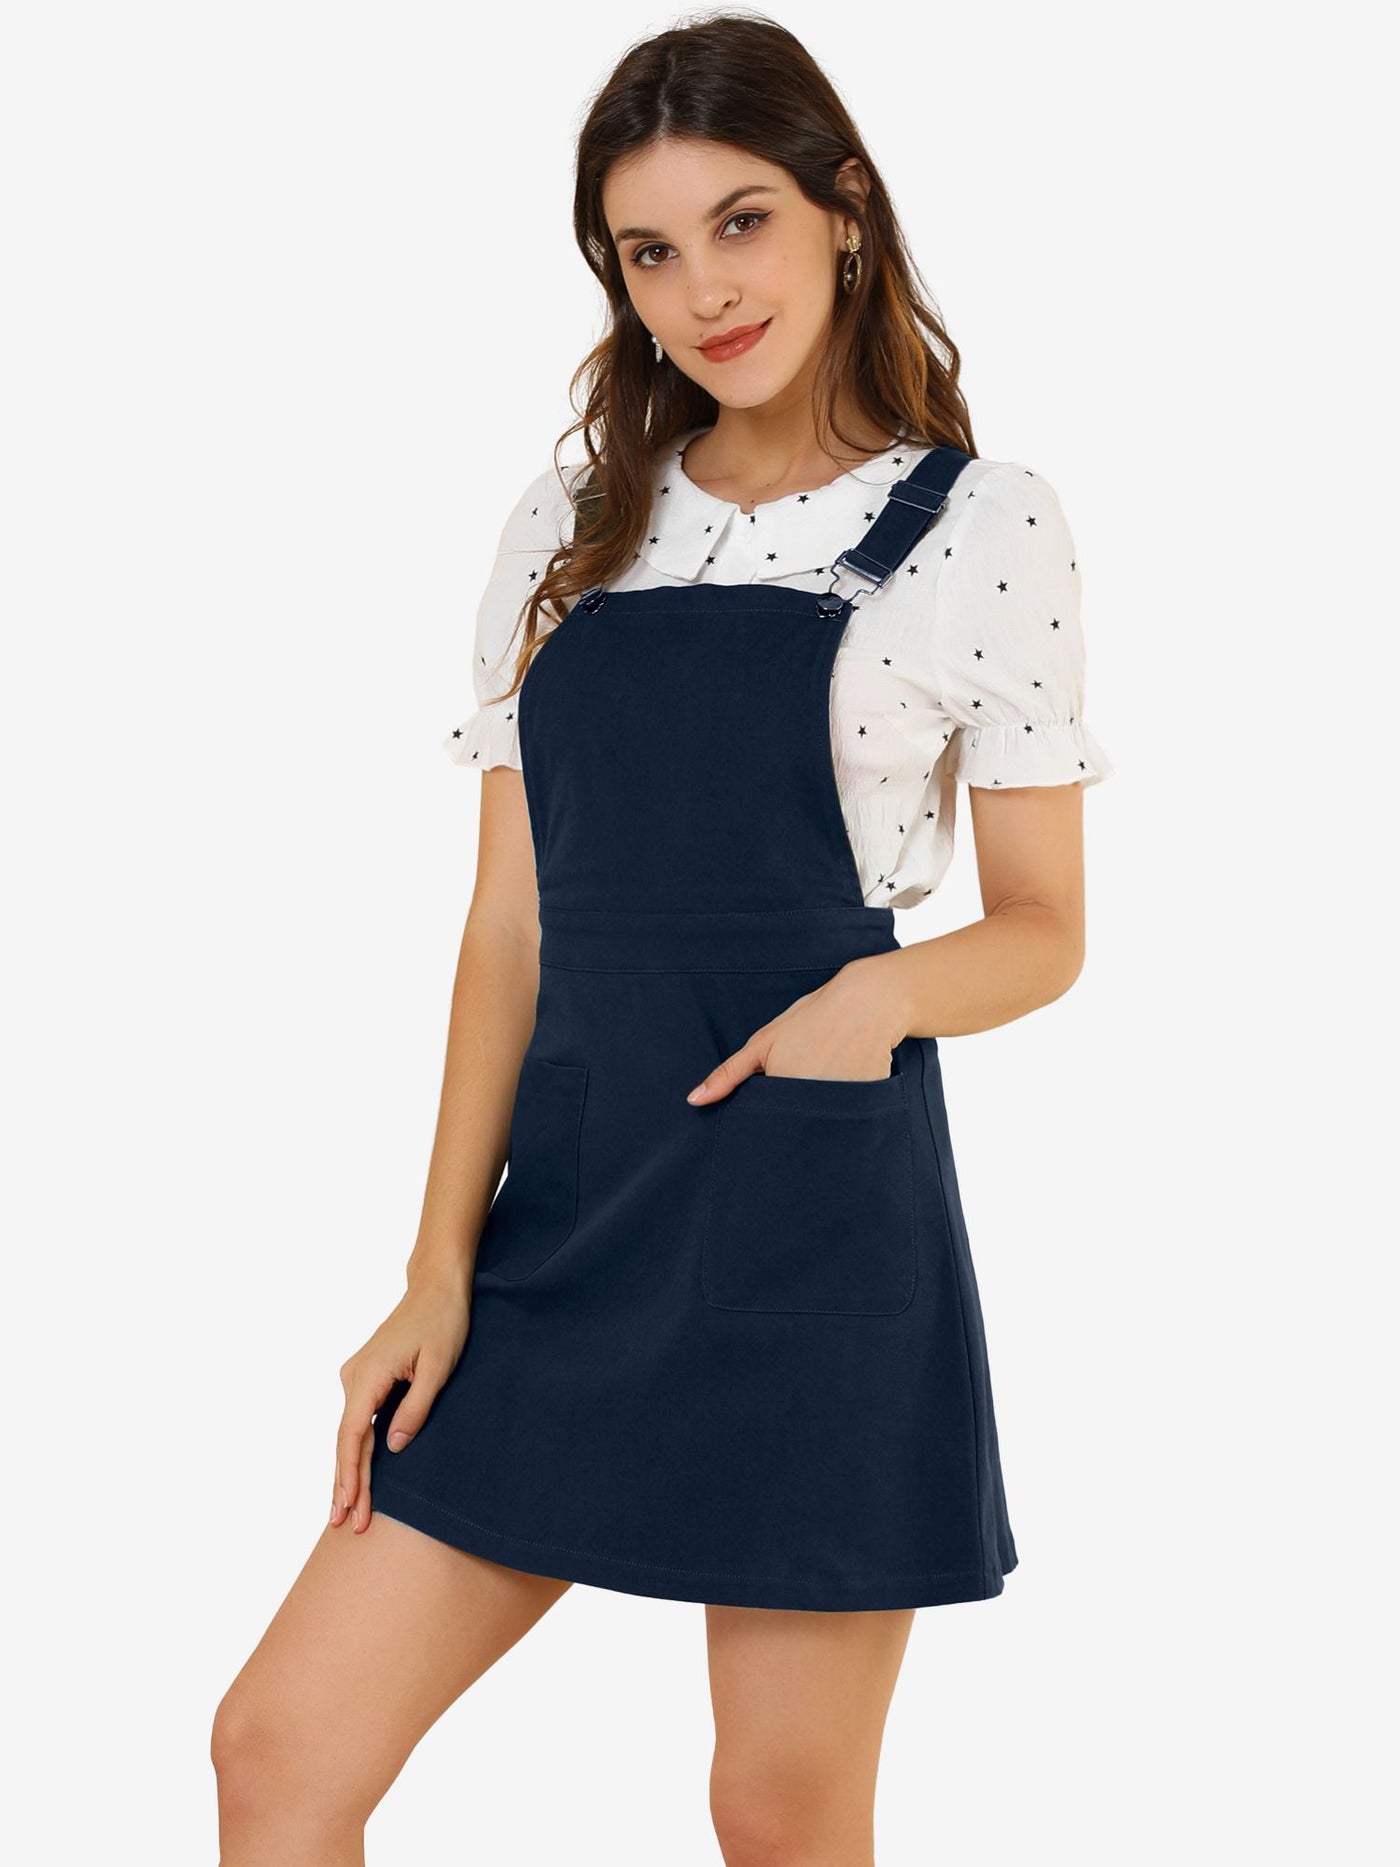 Allegra K Adjustable Strap Suspender Skirt Pocket A-Line Pinafore Overall Dress